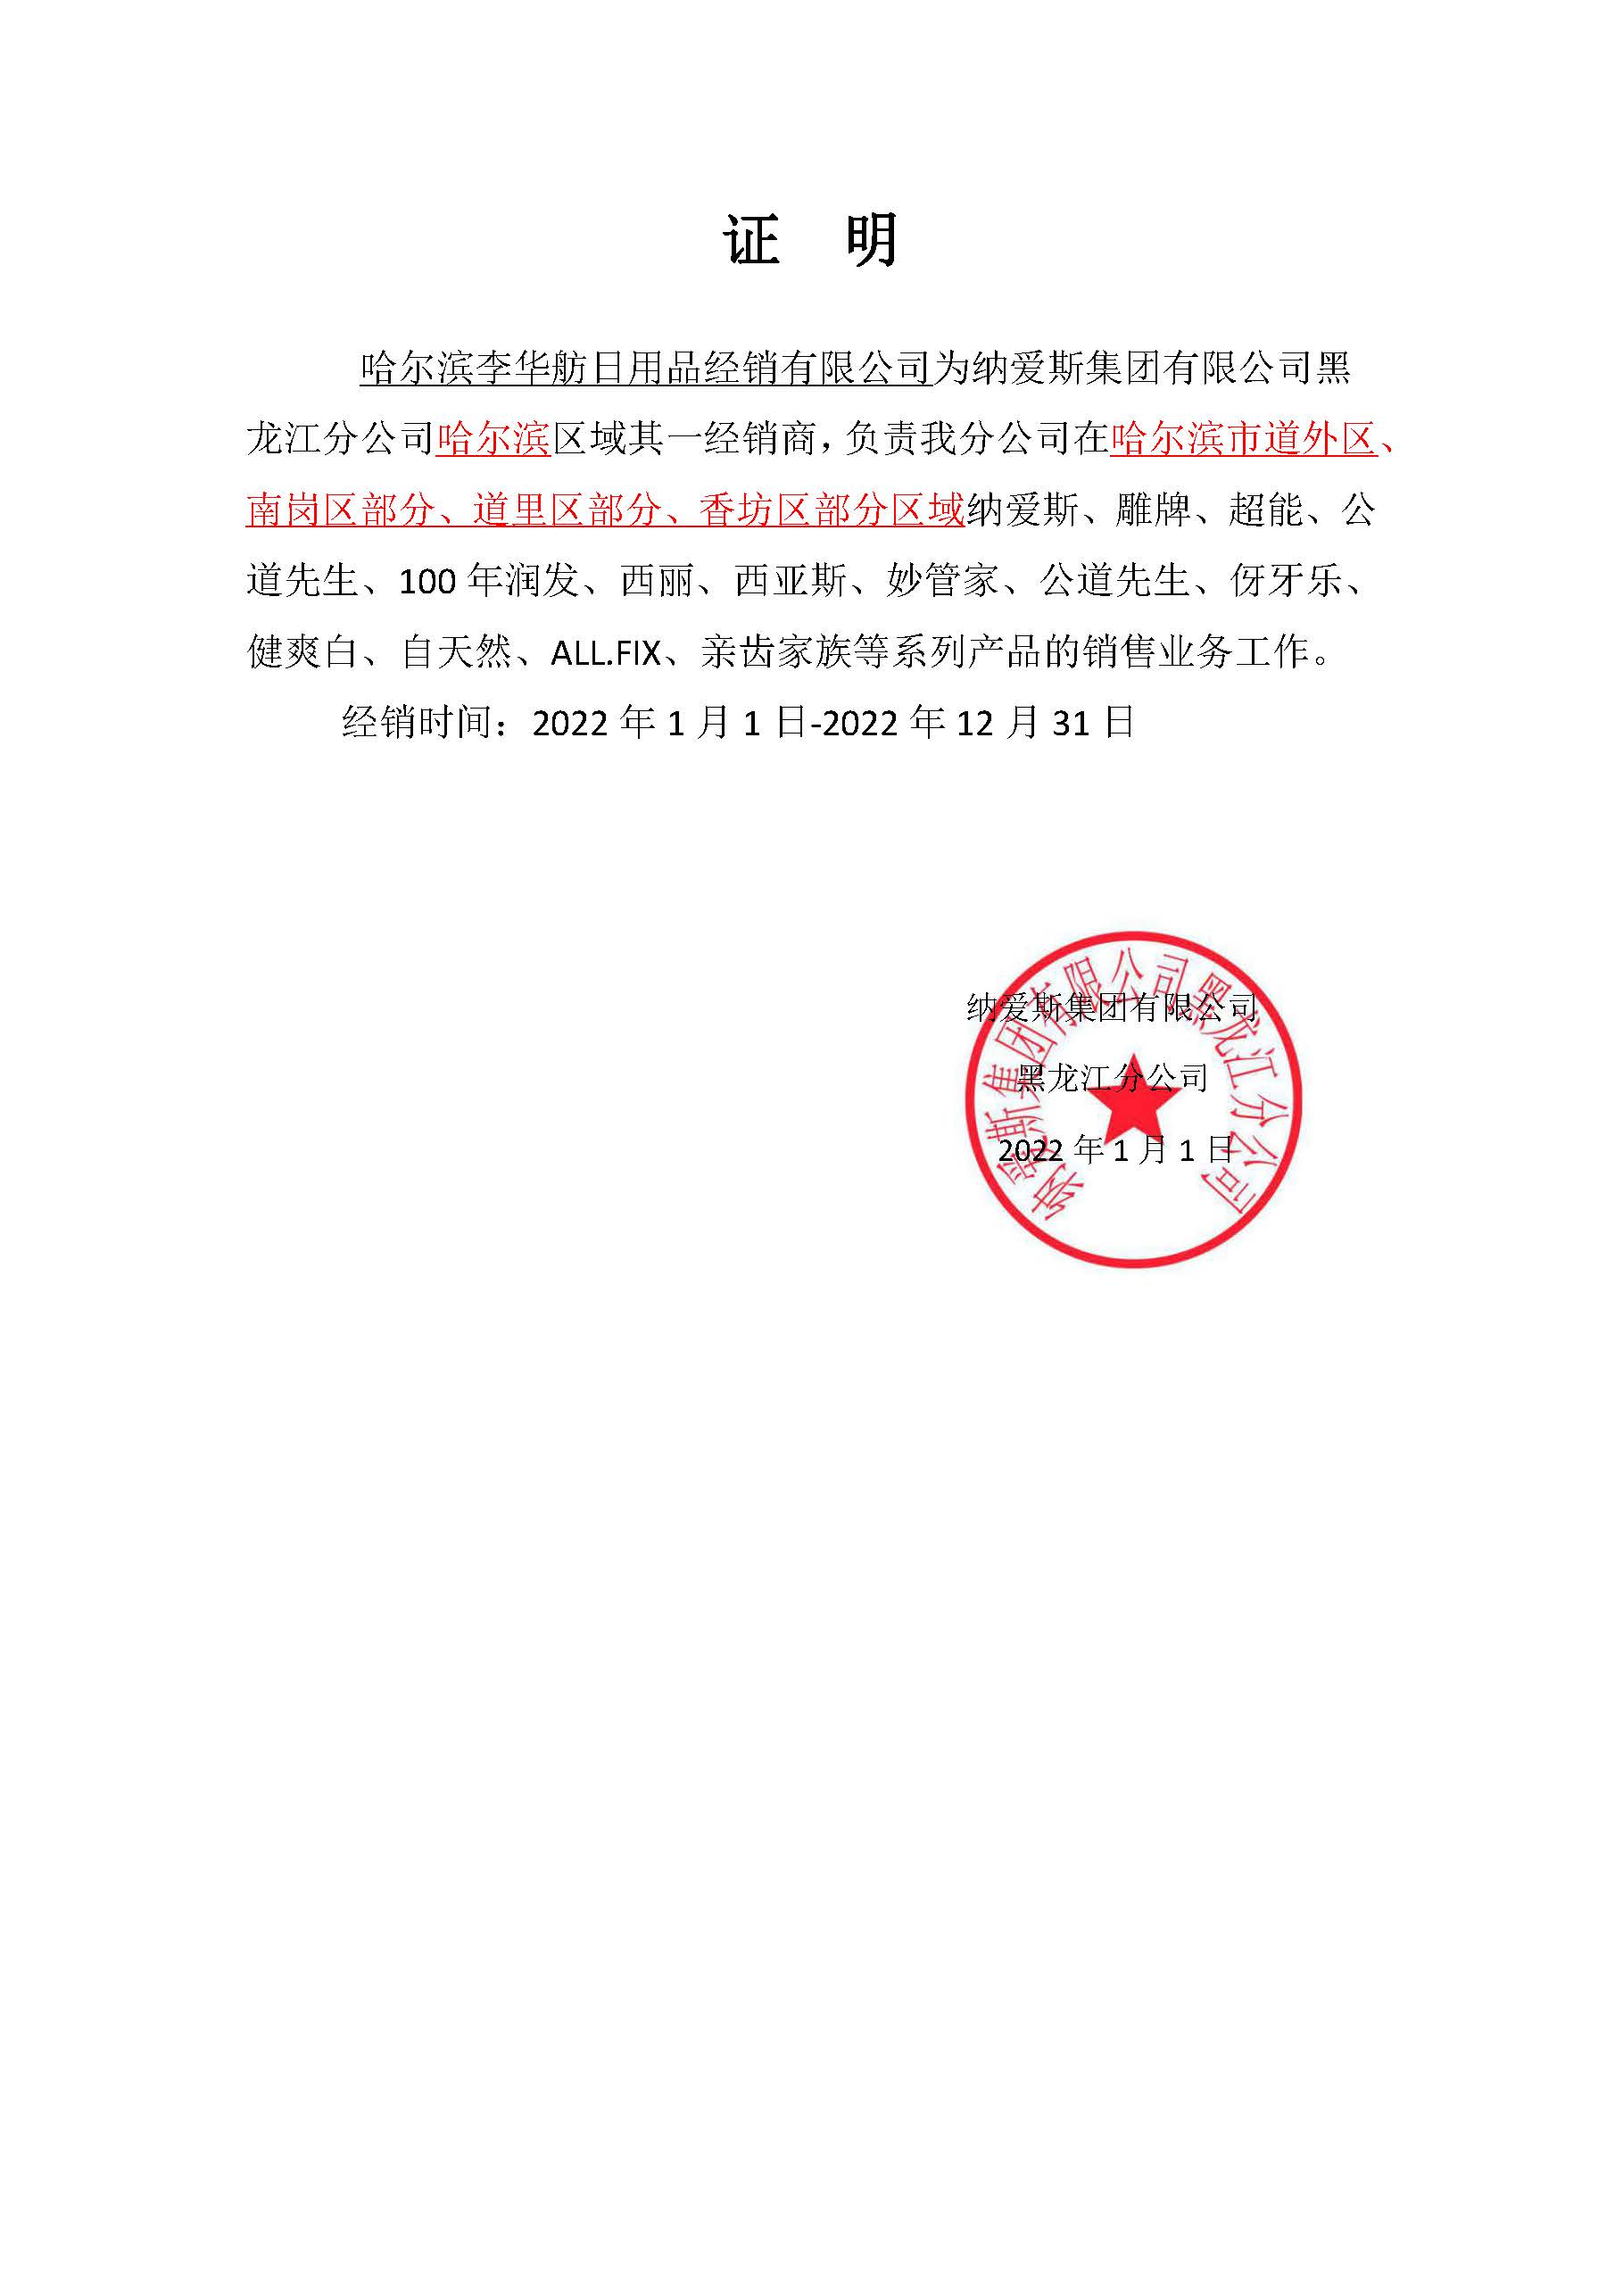 雕牌授权协议李华舫20220101-2022年12月31日.jpg